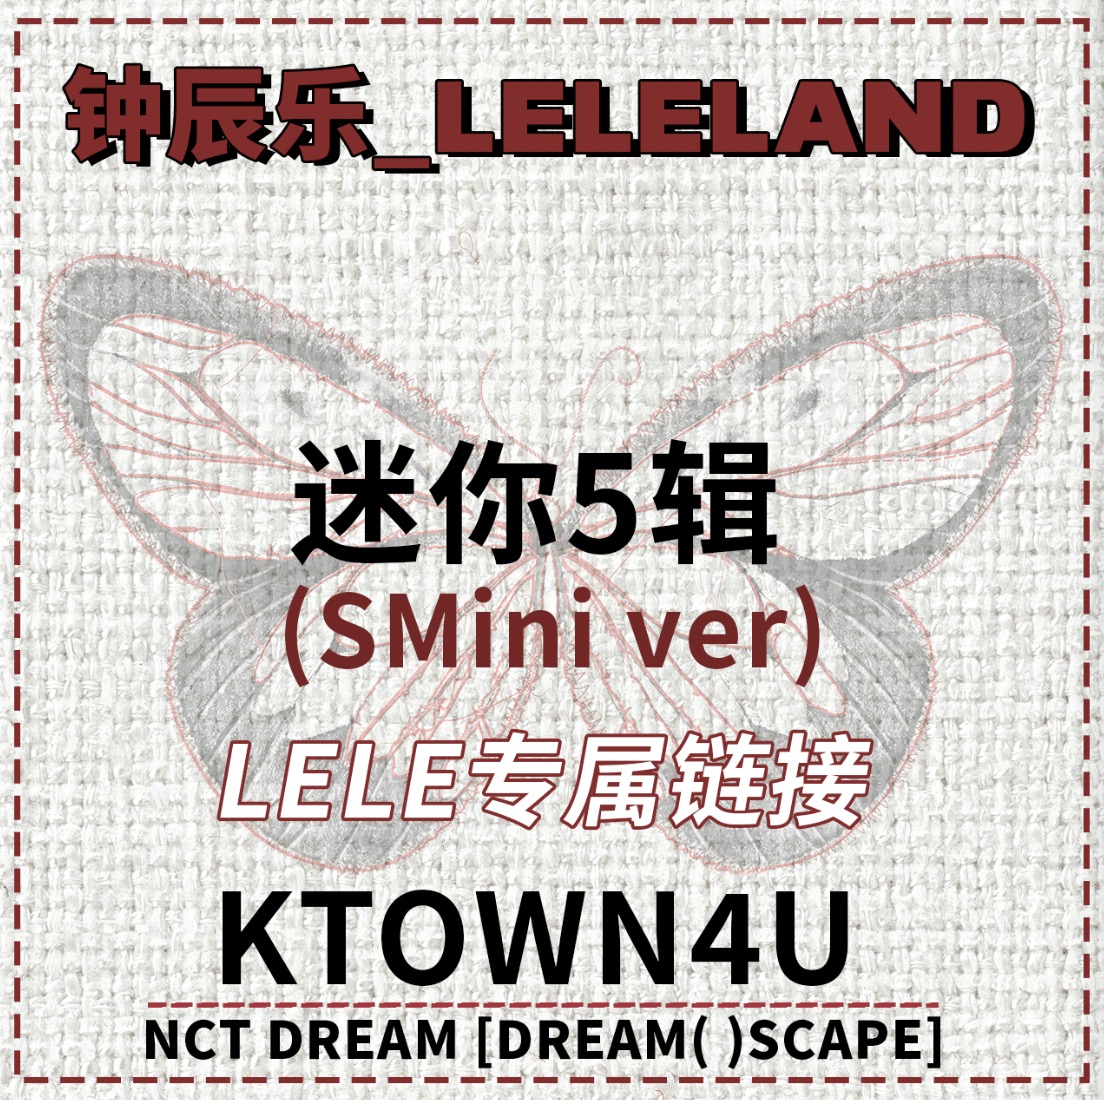 [全款 裸专] [LELELAND专属链接] NCT DREAM - [DREAM( )SCAPE] (SMini Ver.) (Smart Album) _钟辰乐吧_ChenLeBar